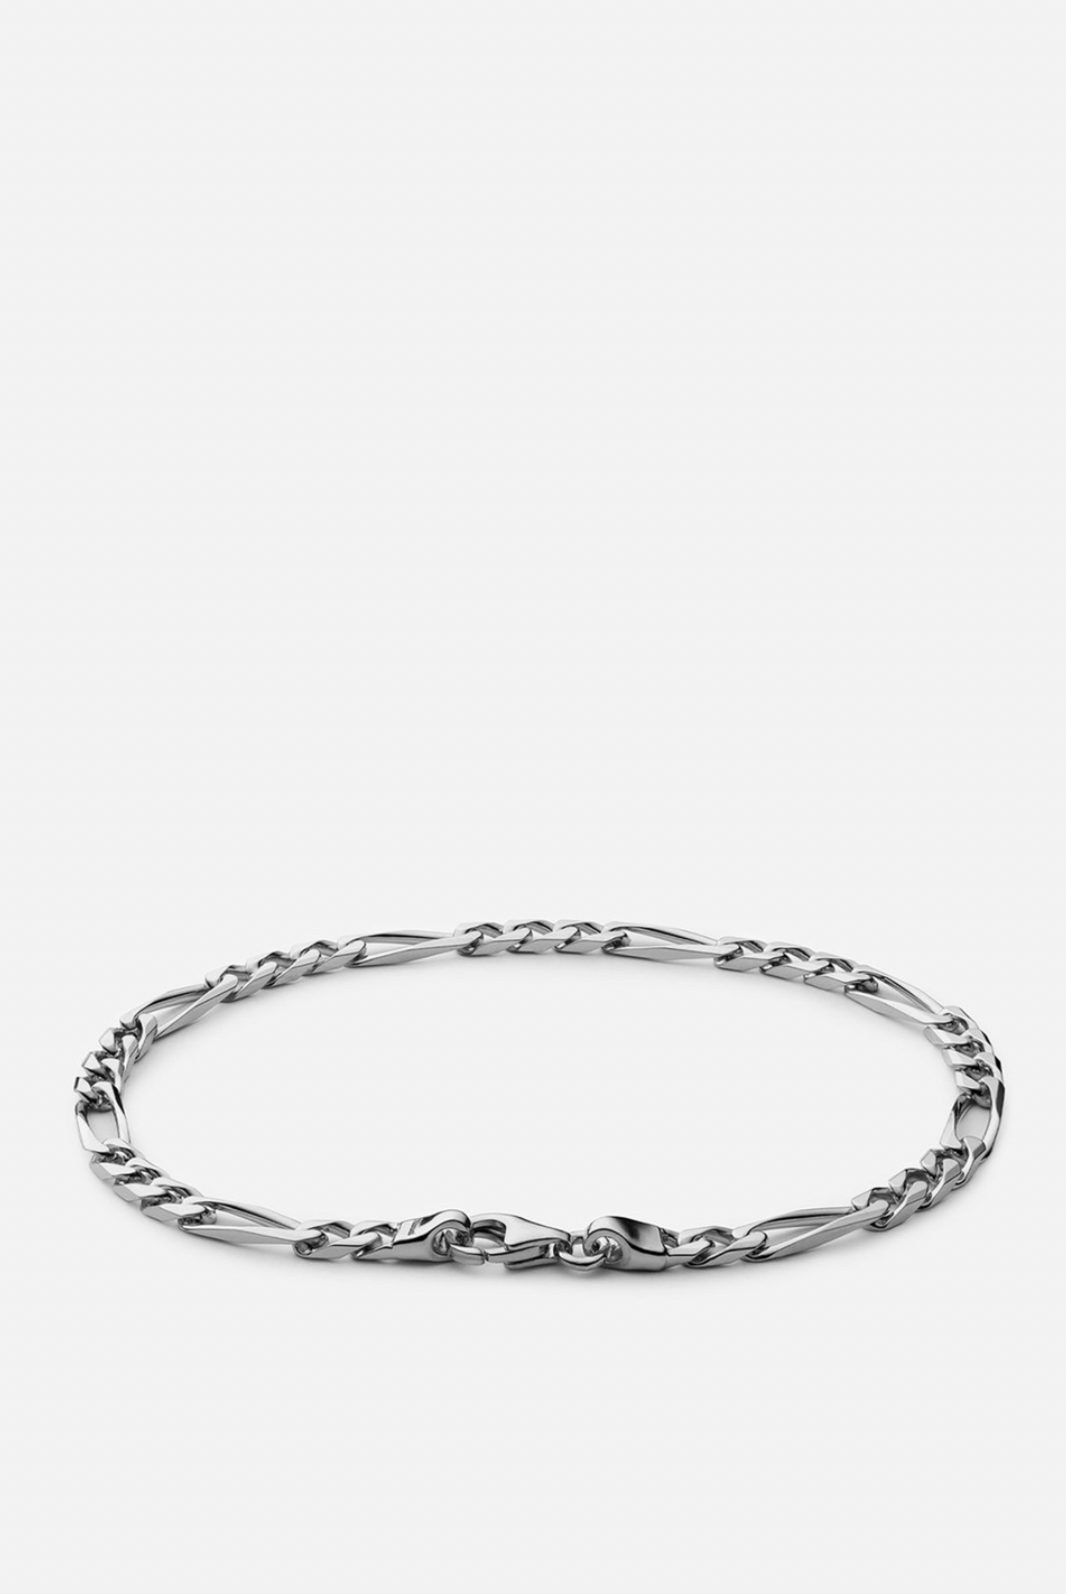 Miansai 3mm Figaro Chain Bracelet Sterling Silver